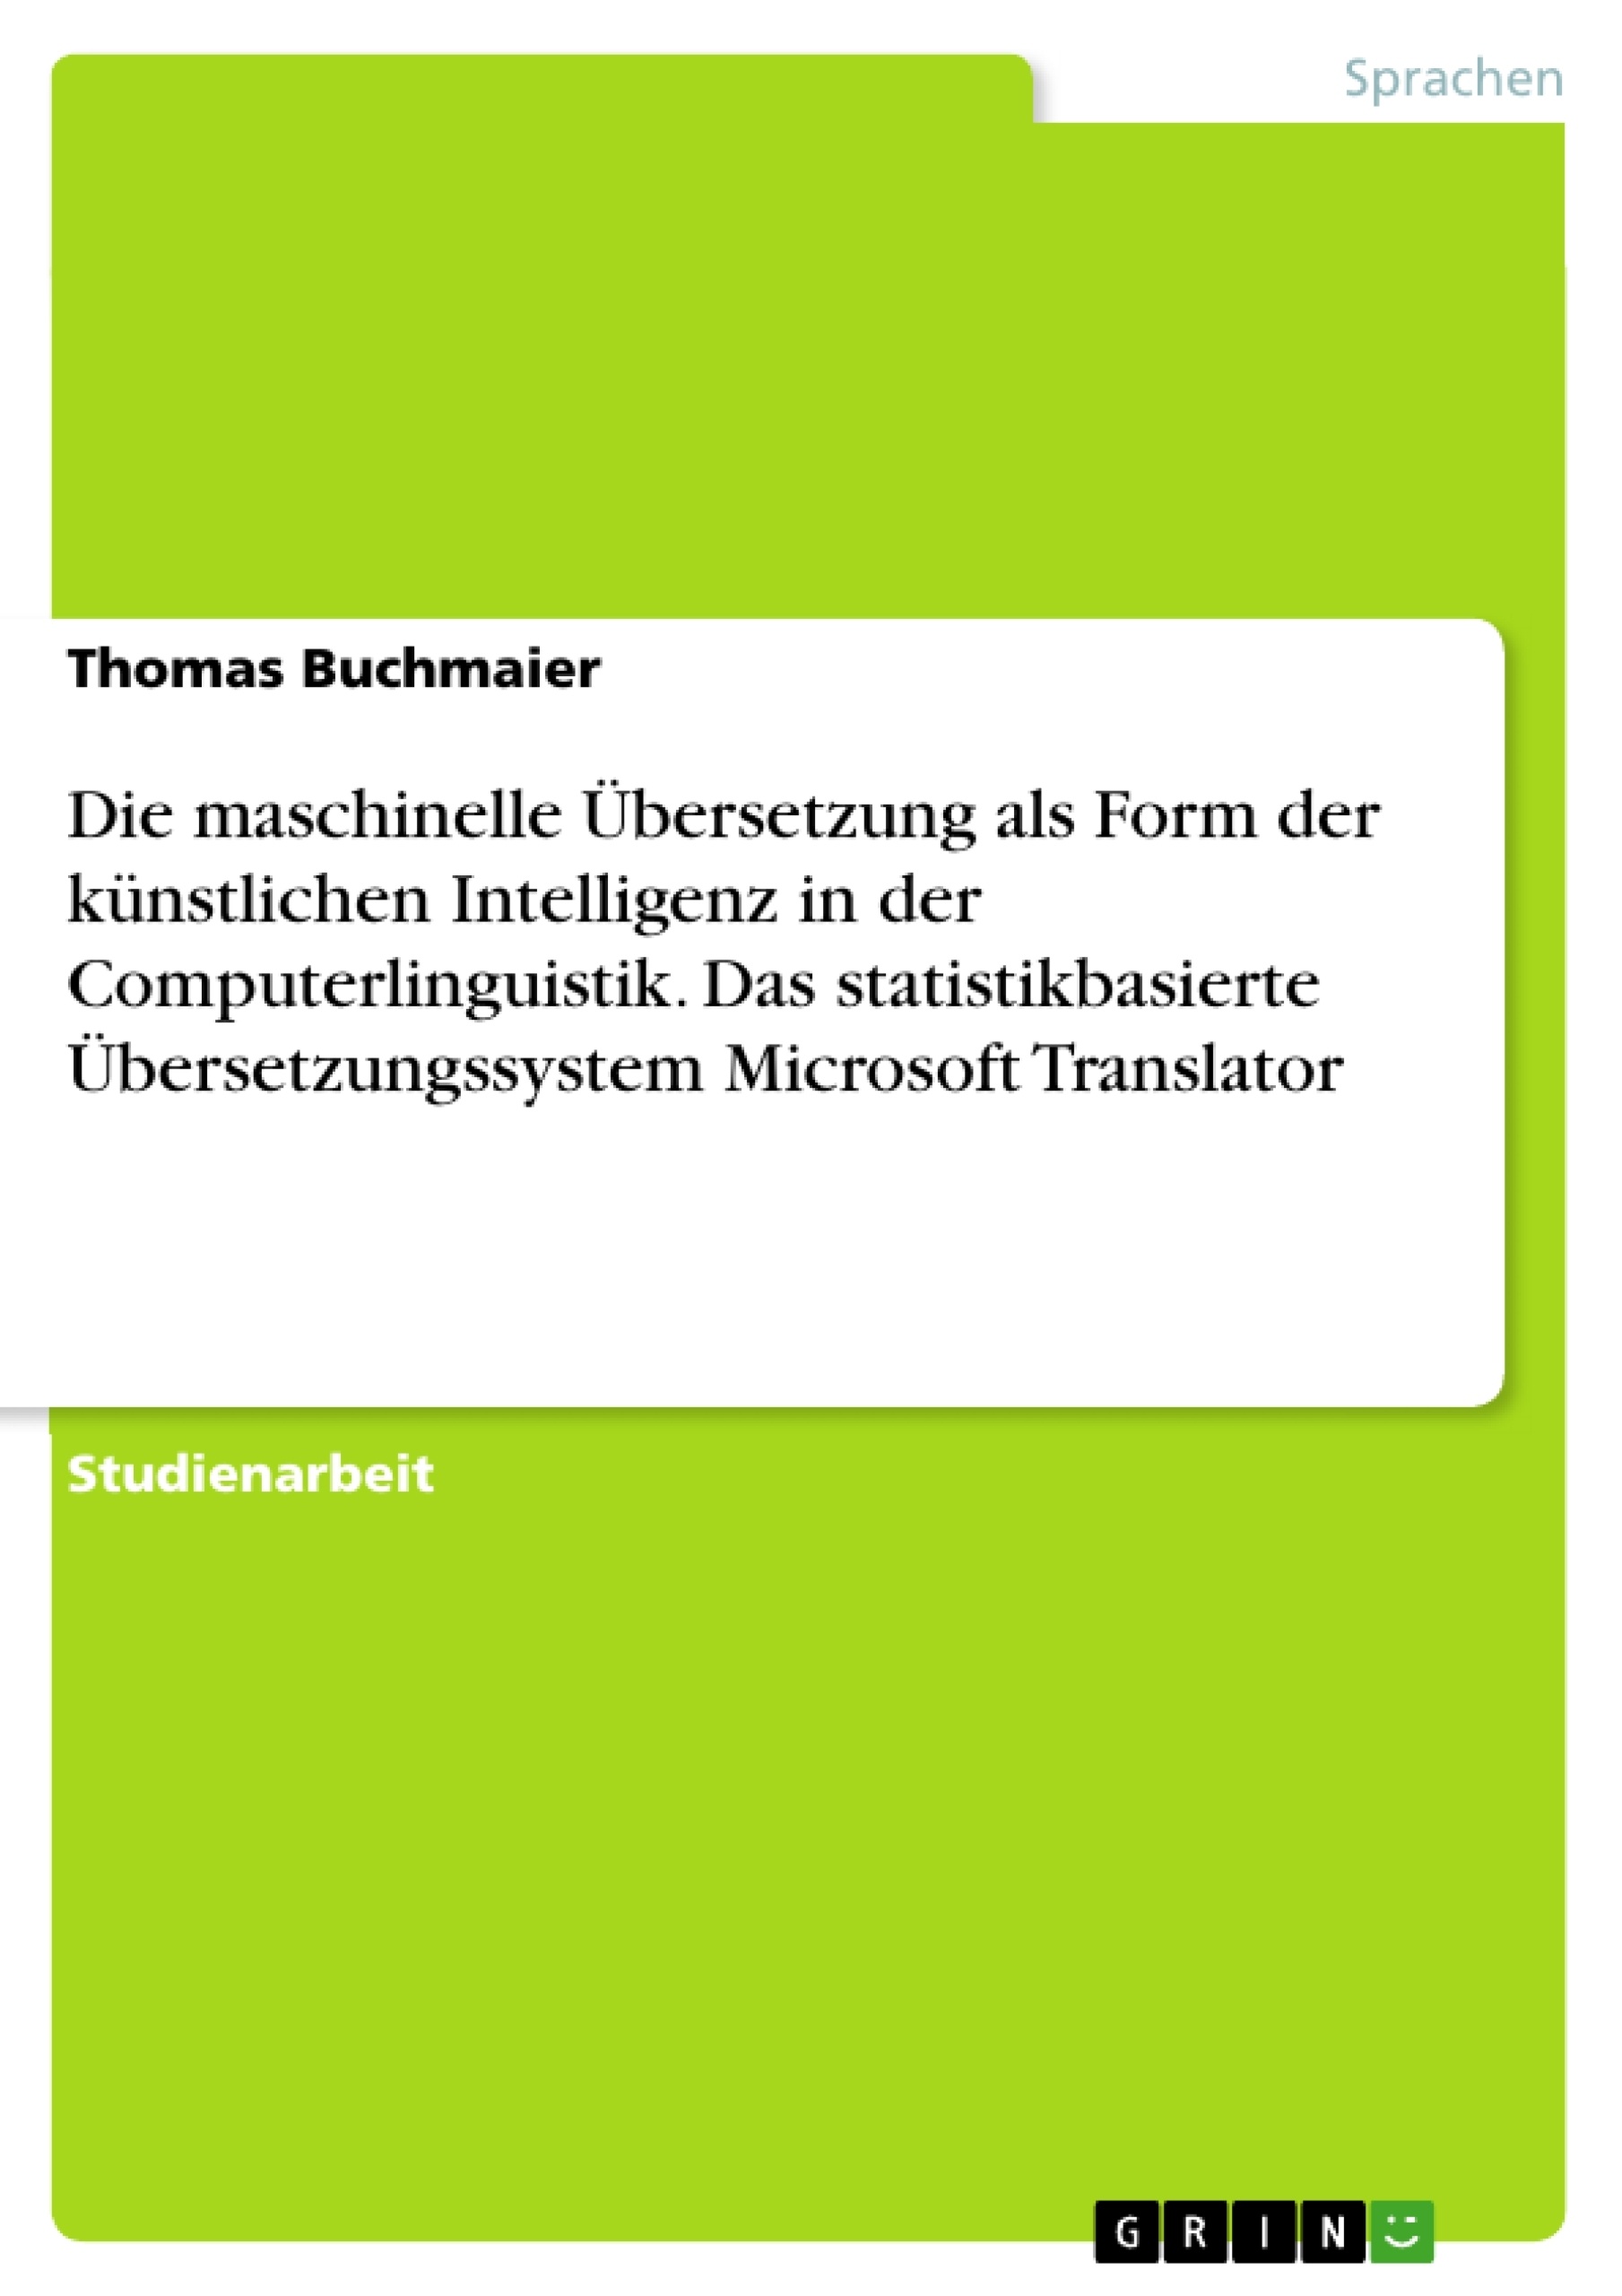 Titel: Die maschinelle Übersetzung als Form der künstlichen Intelligenz in der Computerlinguistik. Das statistikbasierte Übersetzungssystem Microsoft Translator